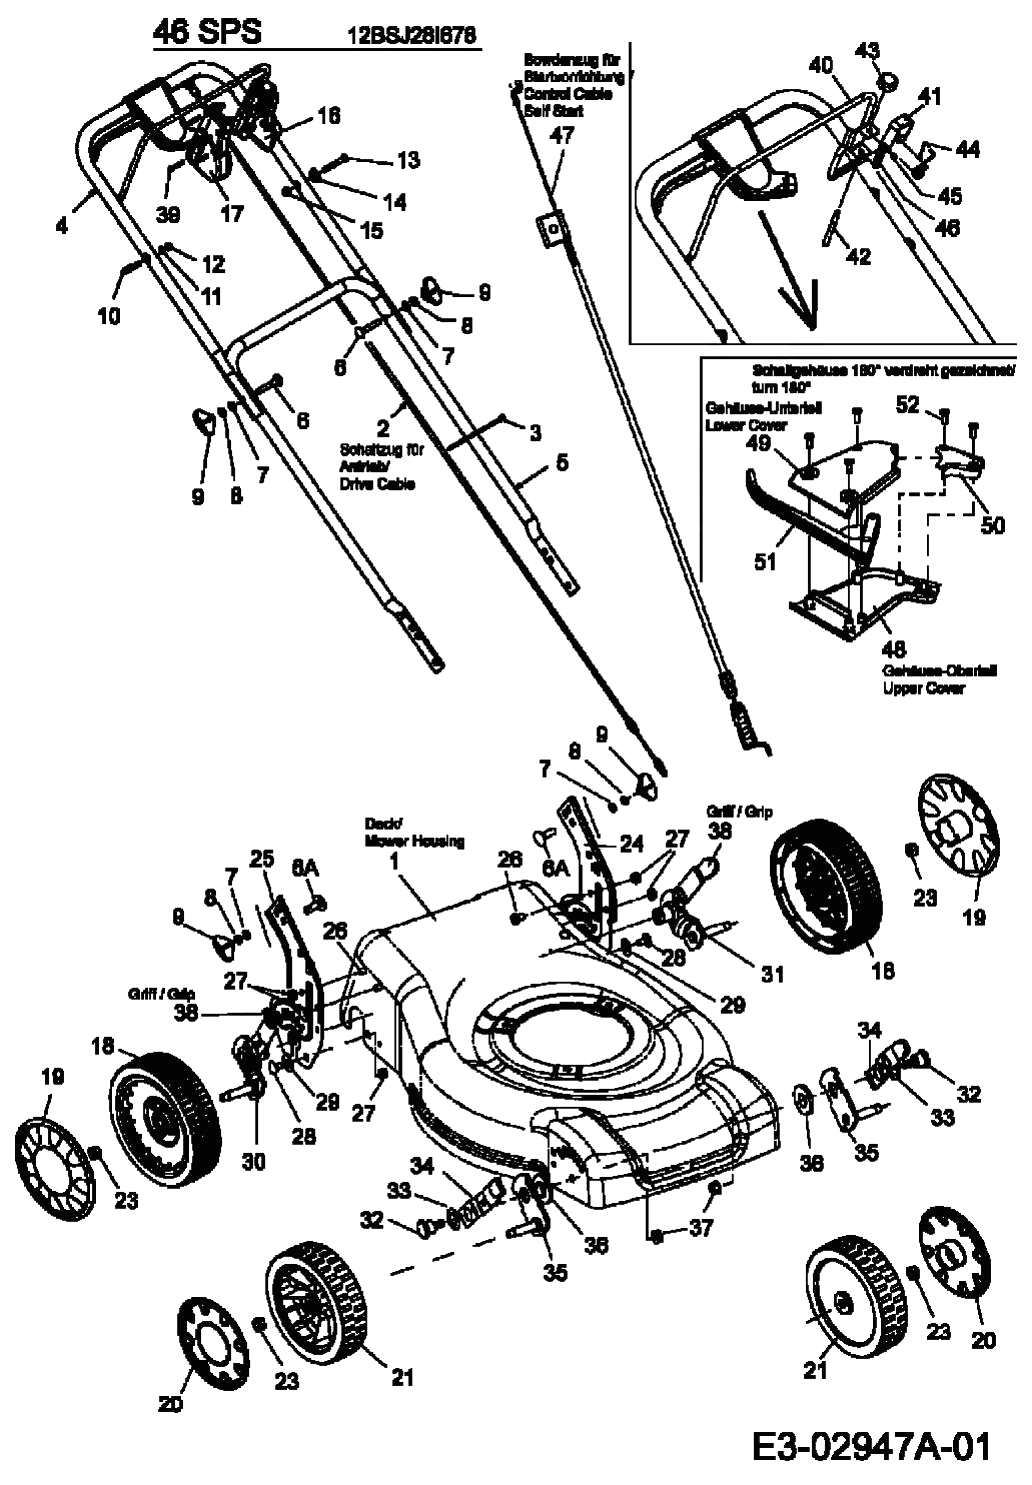 MTD Артикул 12BSJ28I678 (год выпуска 2006). Ручка, колеса, регулятор высоты реза